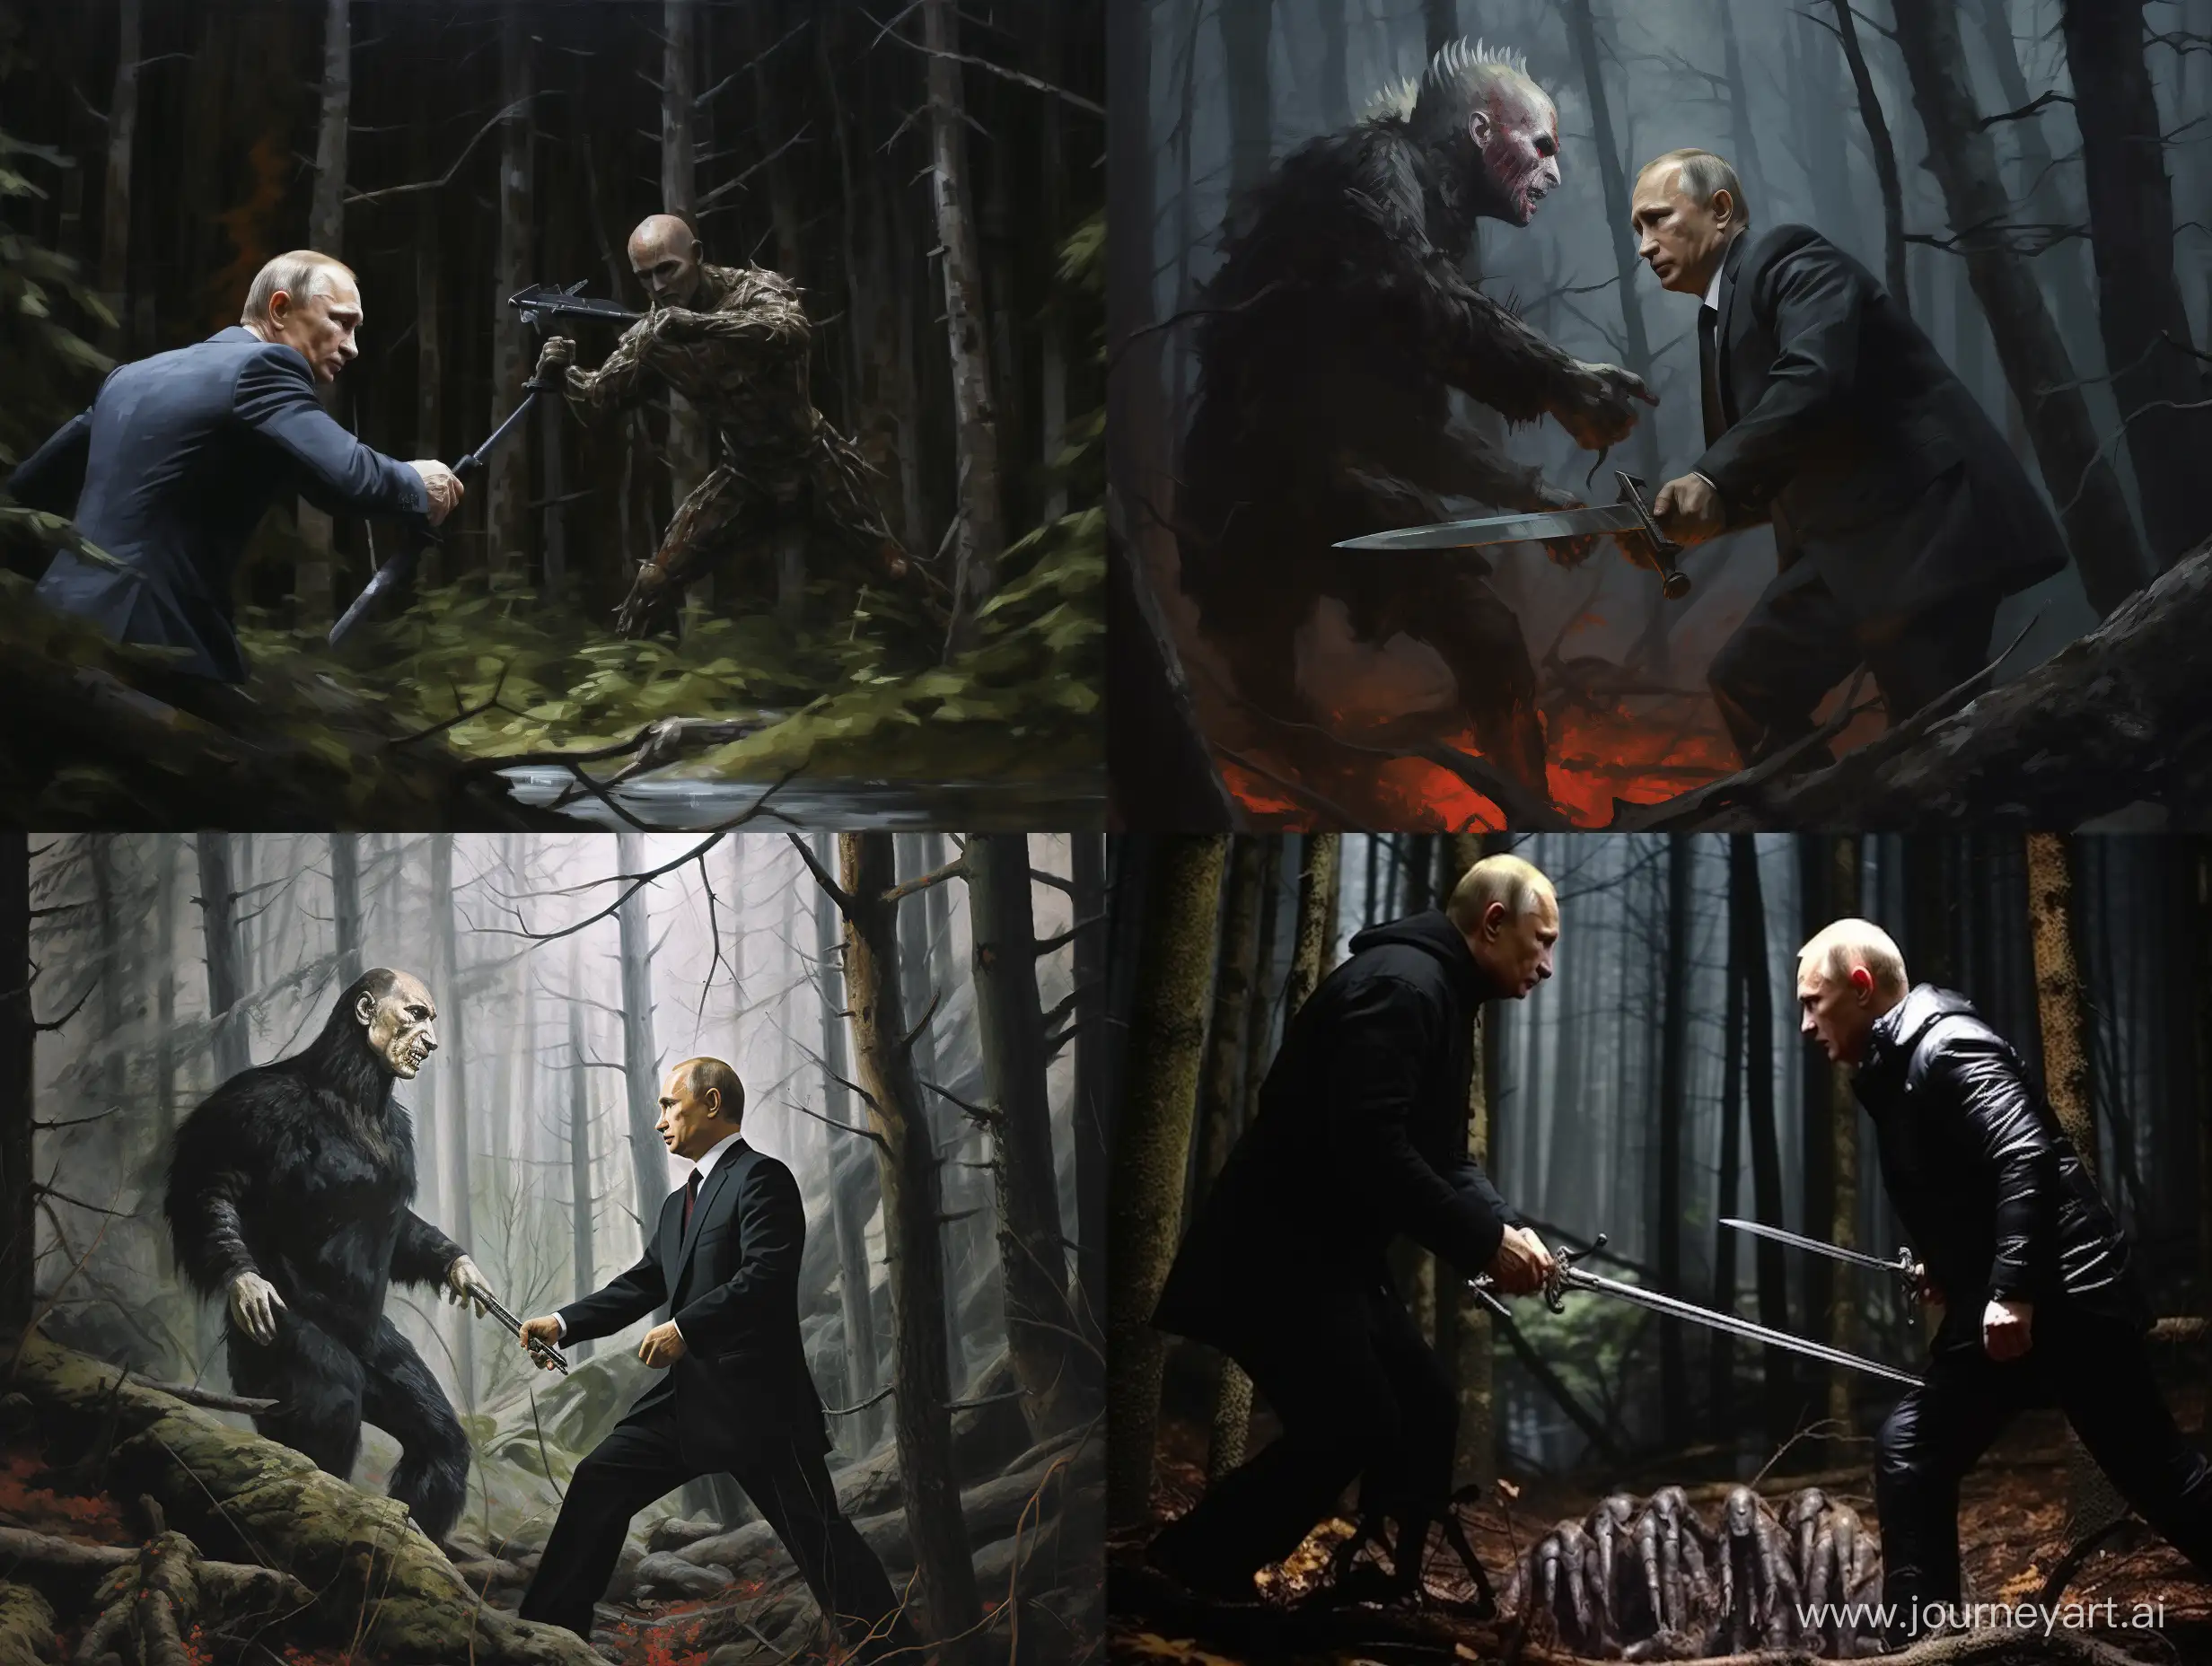 Vladimir Putin battles Birch in a dark forest